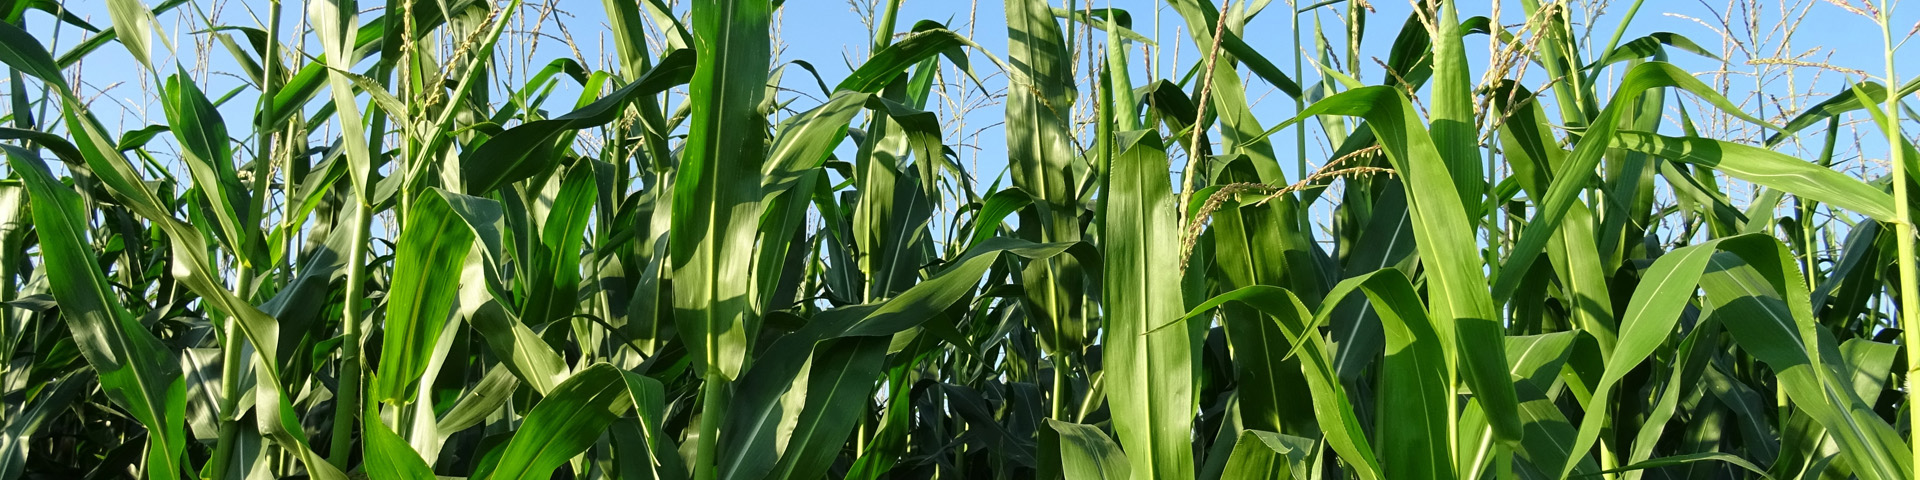 ubezpieczenie kukurydzy